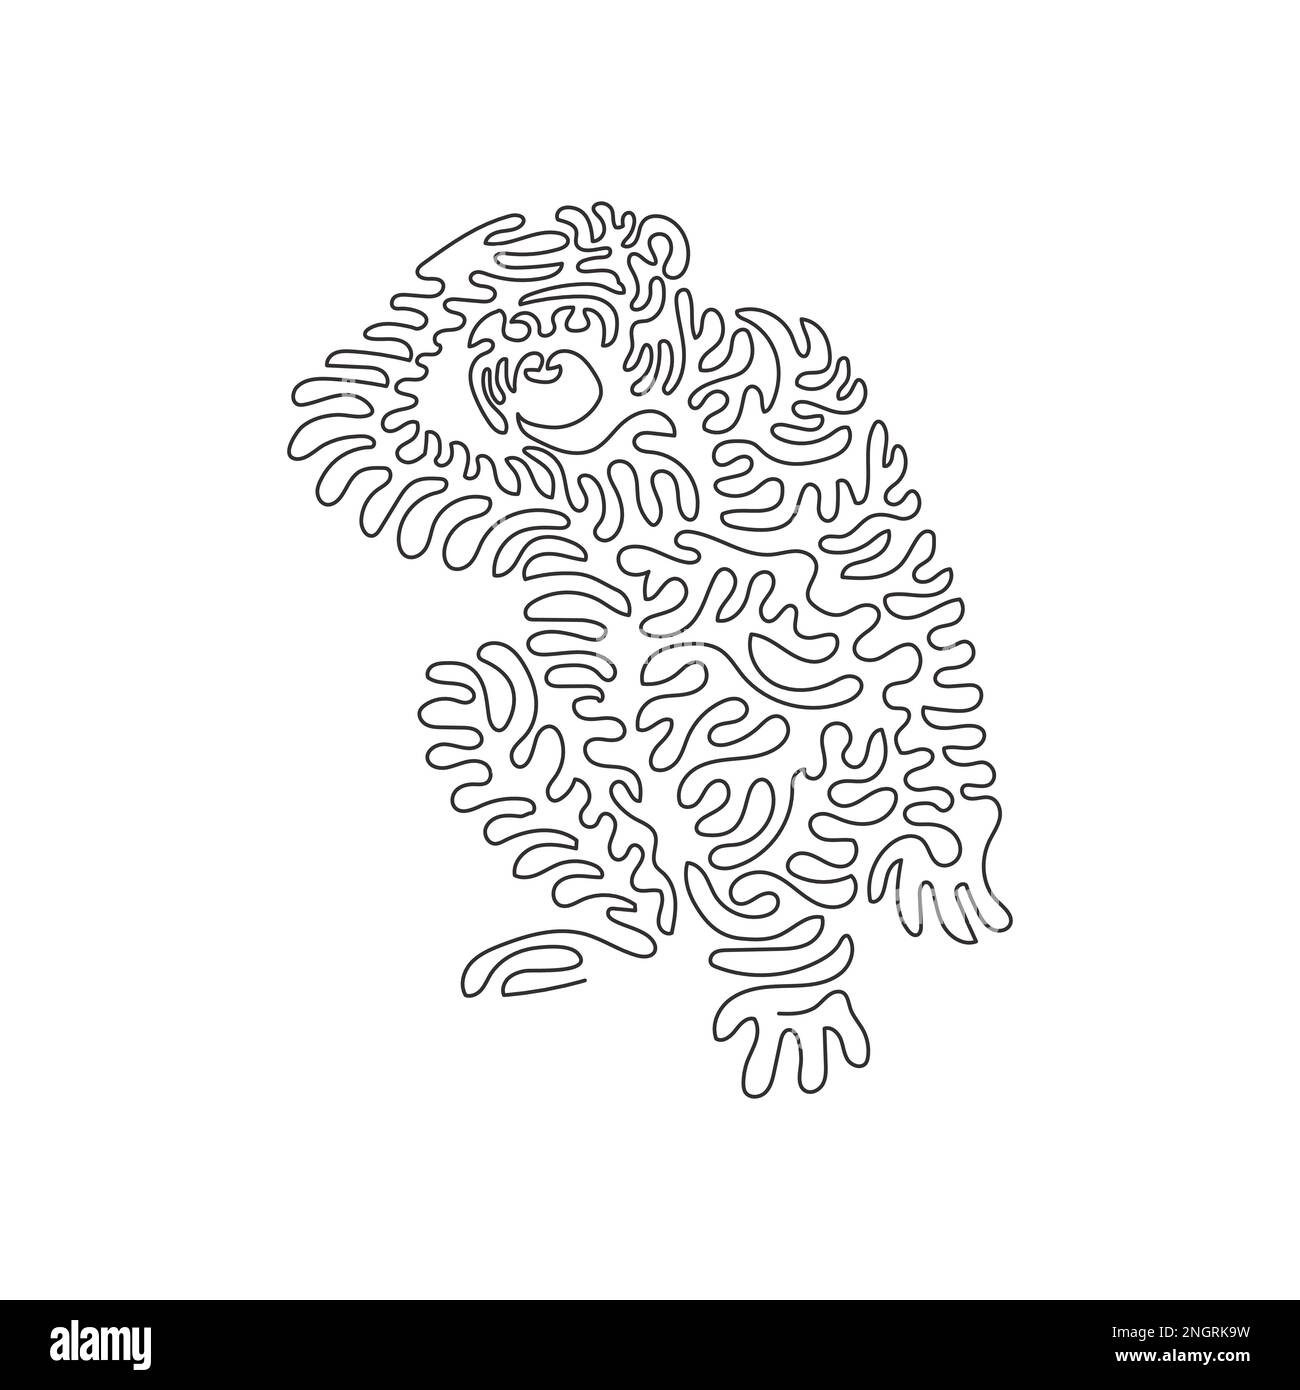 Courbe continue dessin d'une ligne illustration abstraite Les chimpanzés sont très sociaux. Illustration vectorielle d'un trait simple et modifiable des chimpanzés amicaux Illustration de Vecteur